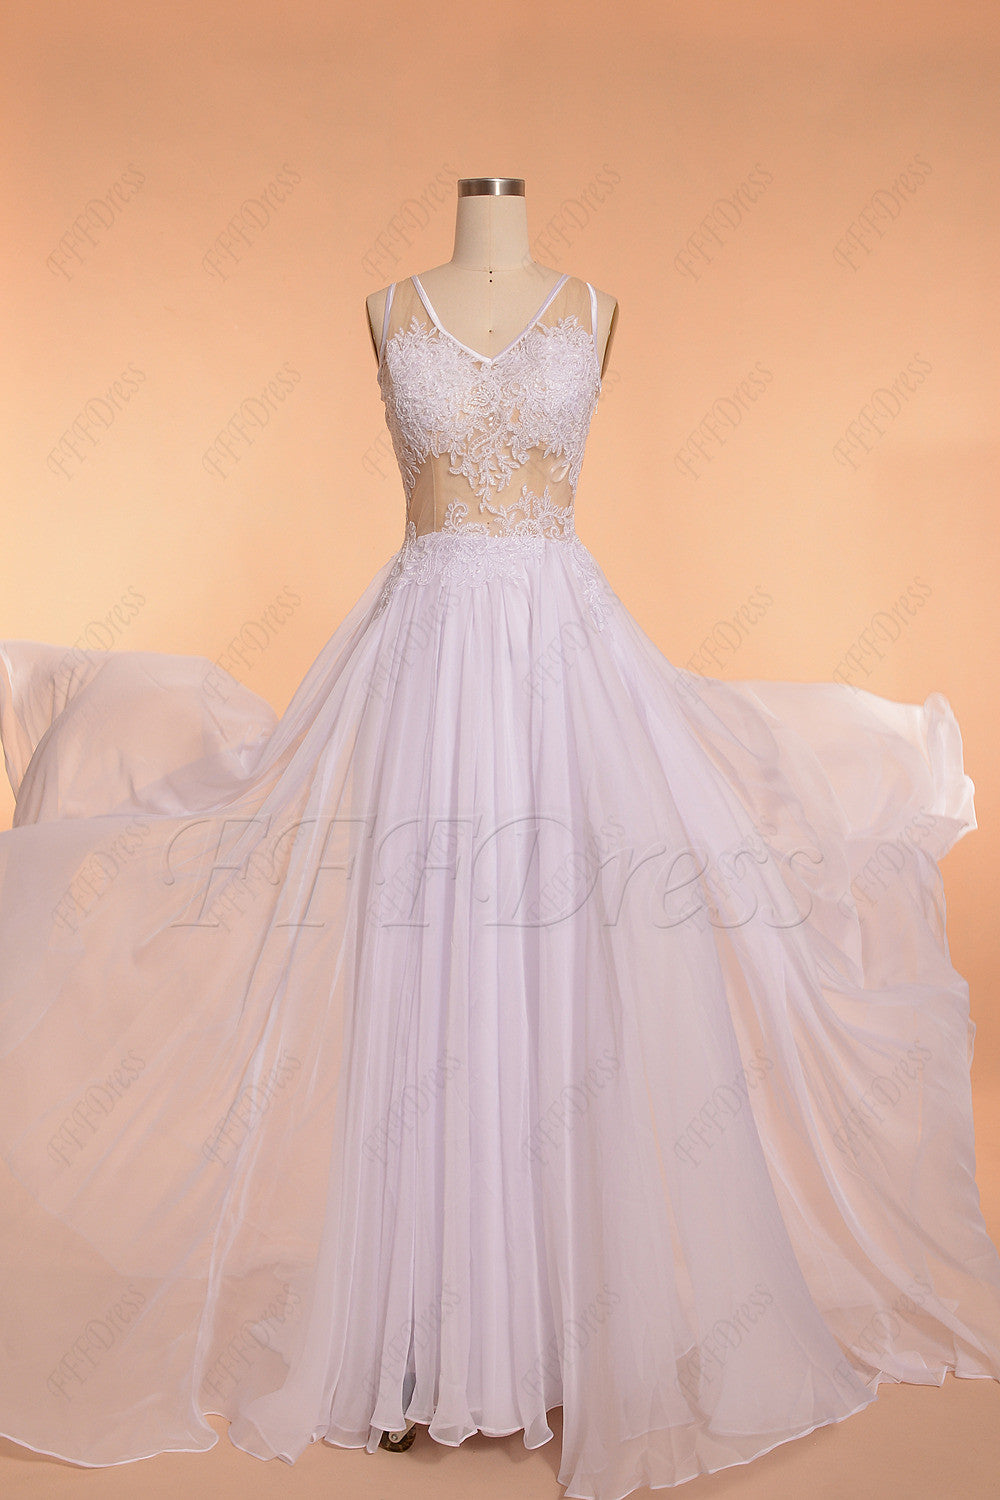 Lace Backless Chiffon Beach Wedding Dress